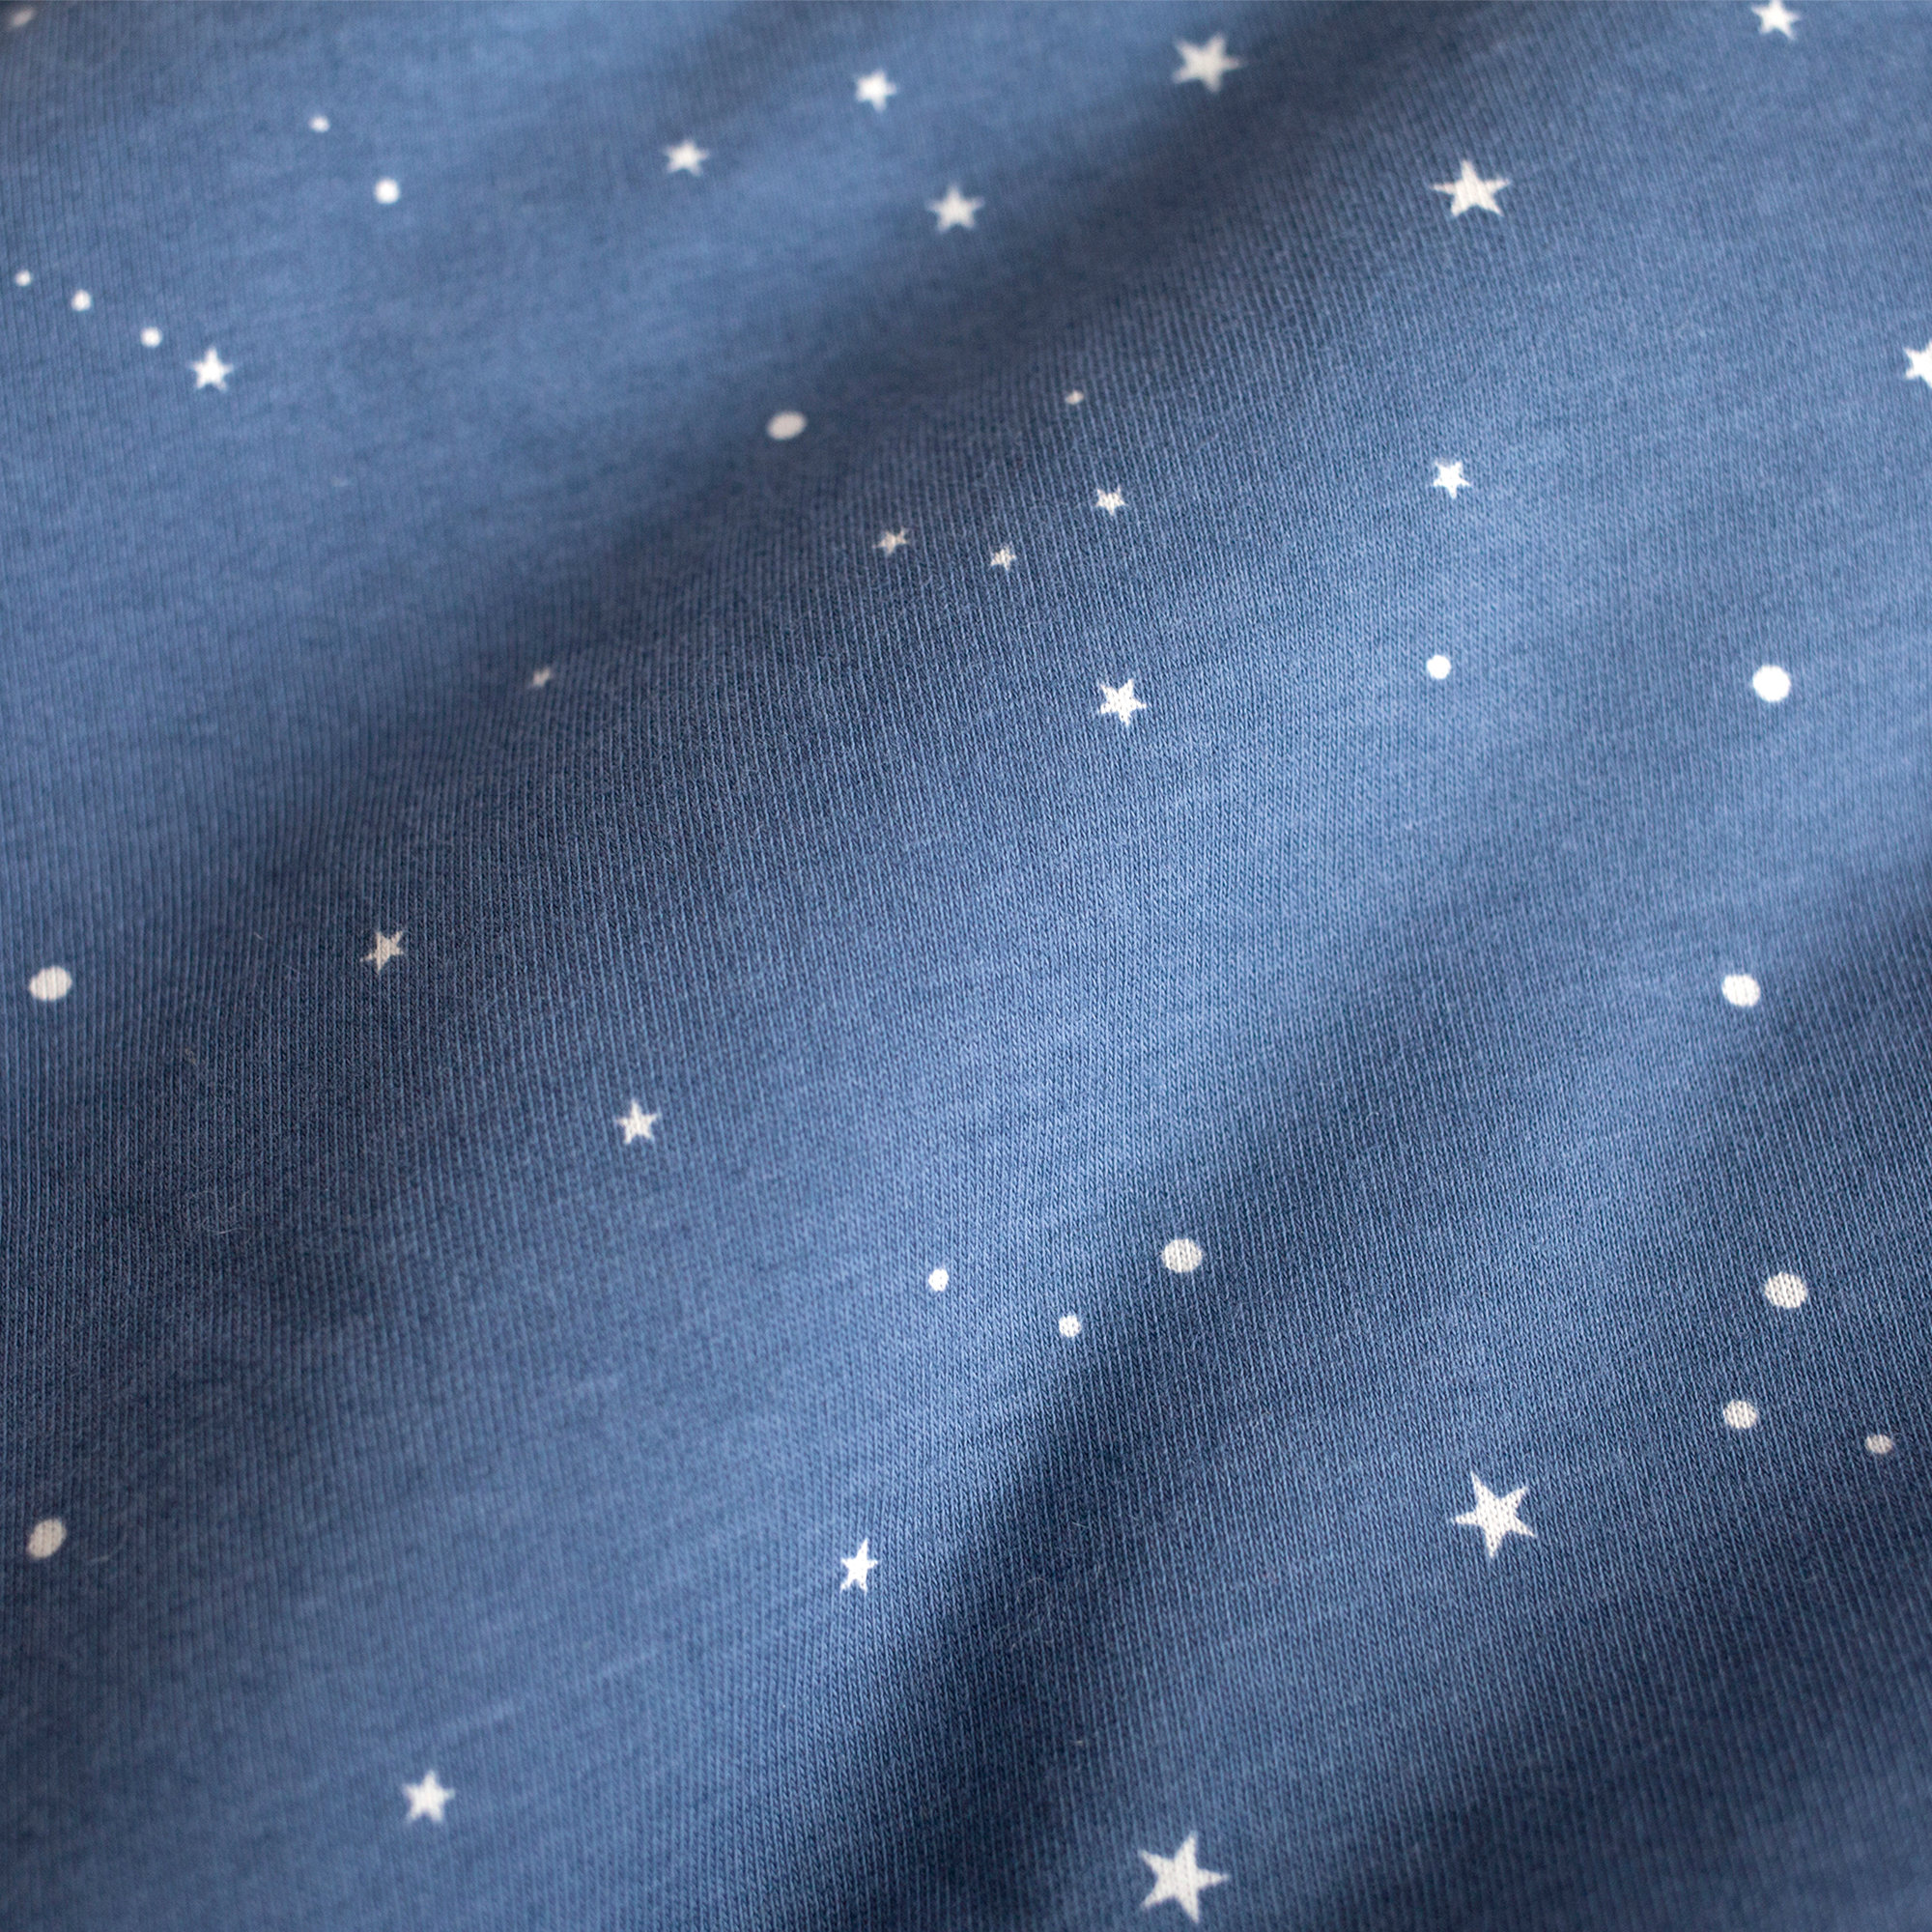 Nestchen Laufgitter Pady jersey + jersey 100x100x28cm STARY Denim blaues kleine Stern